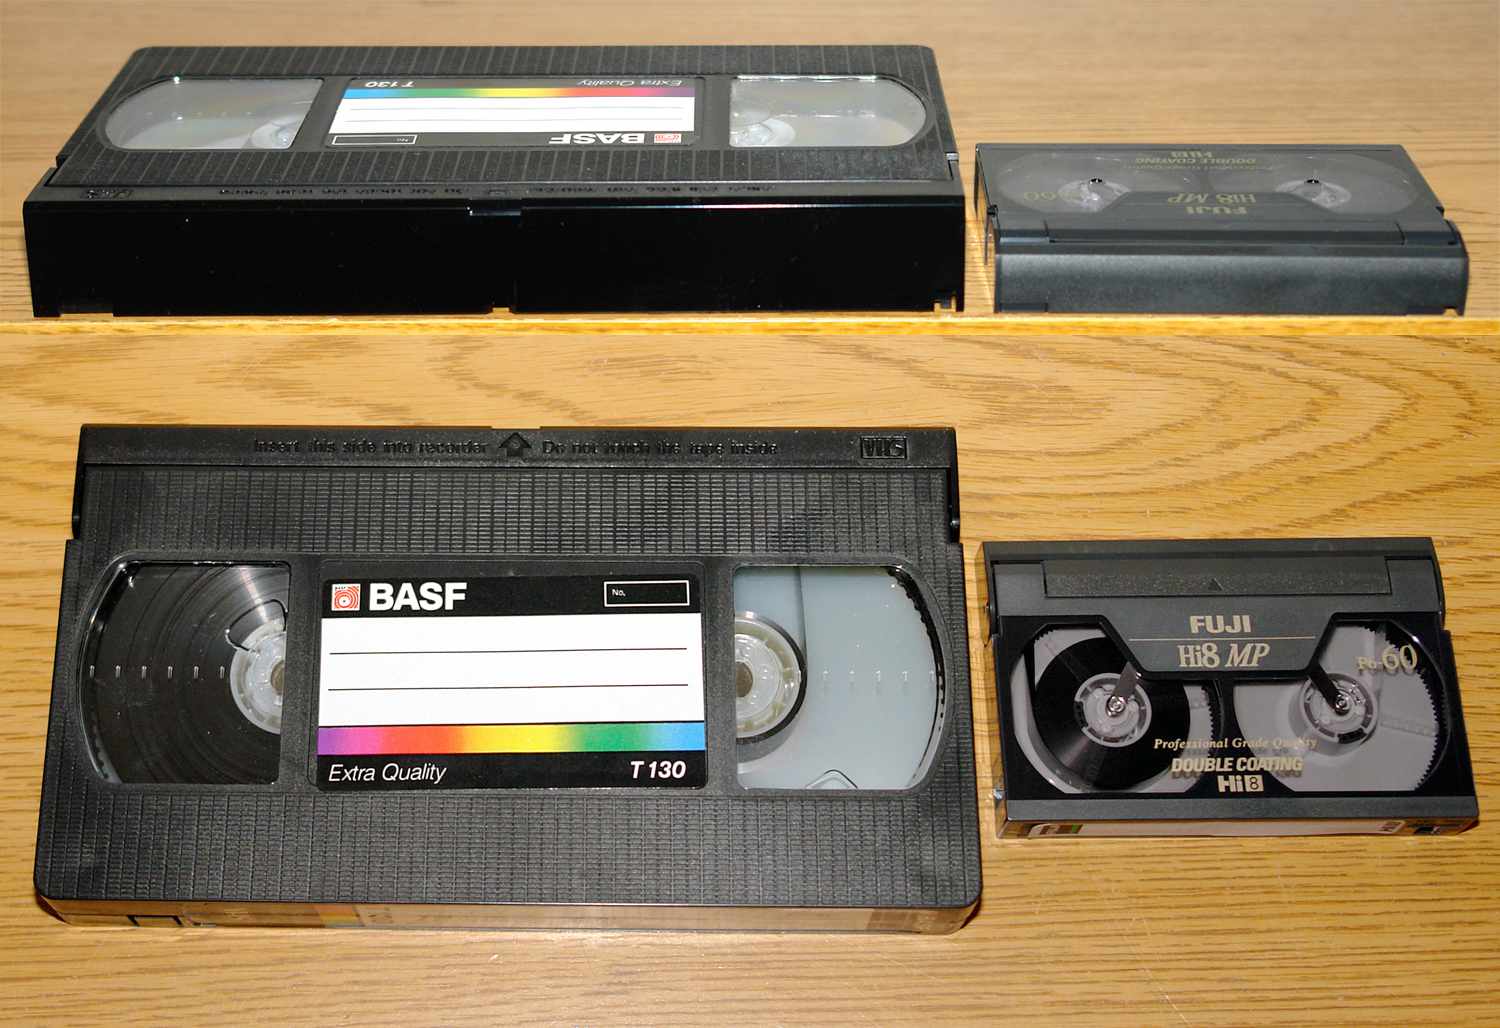 8mm video cassette player